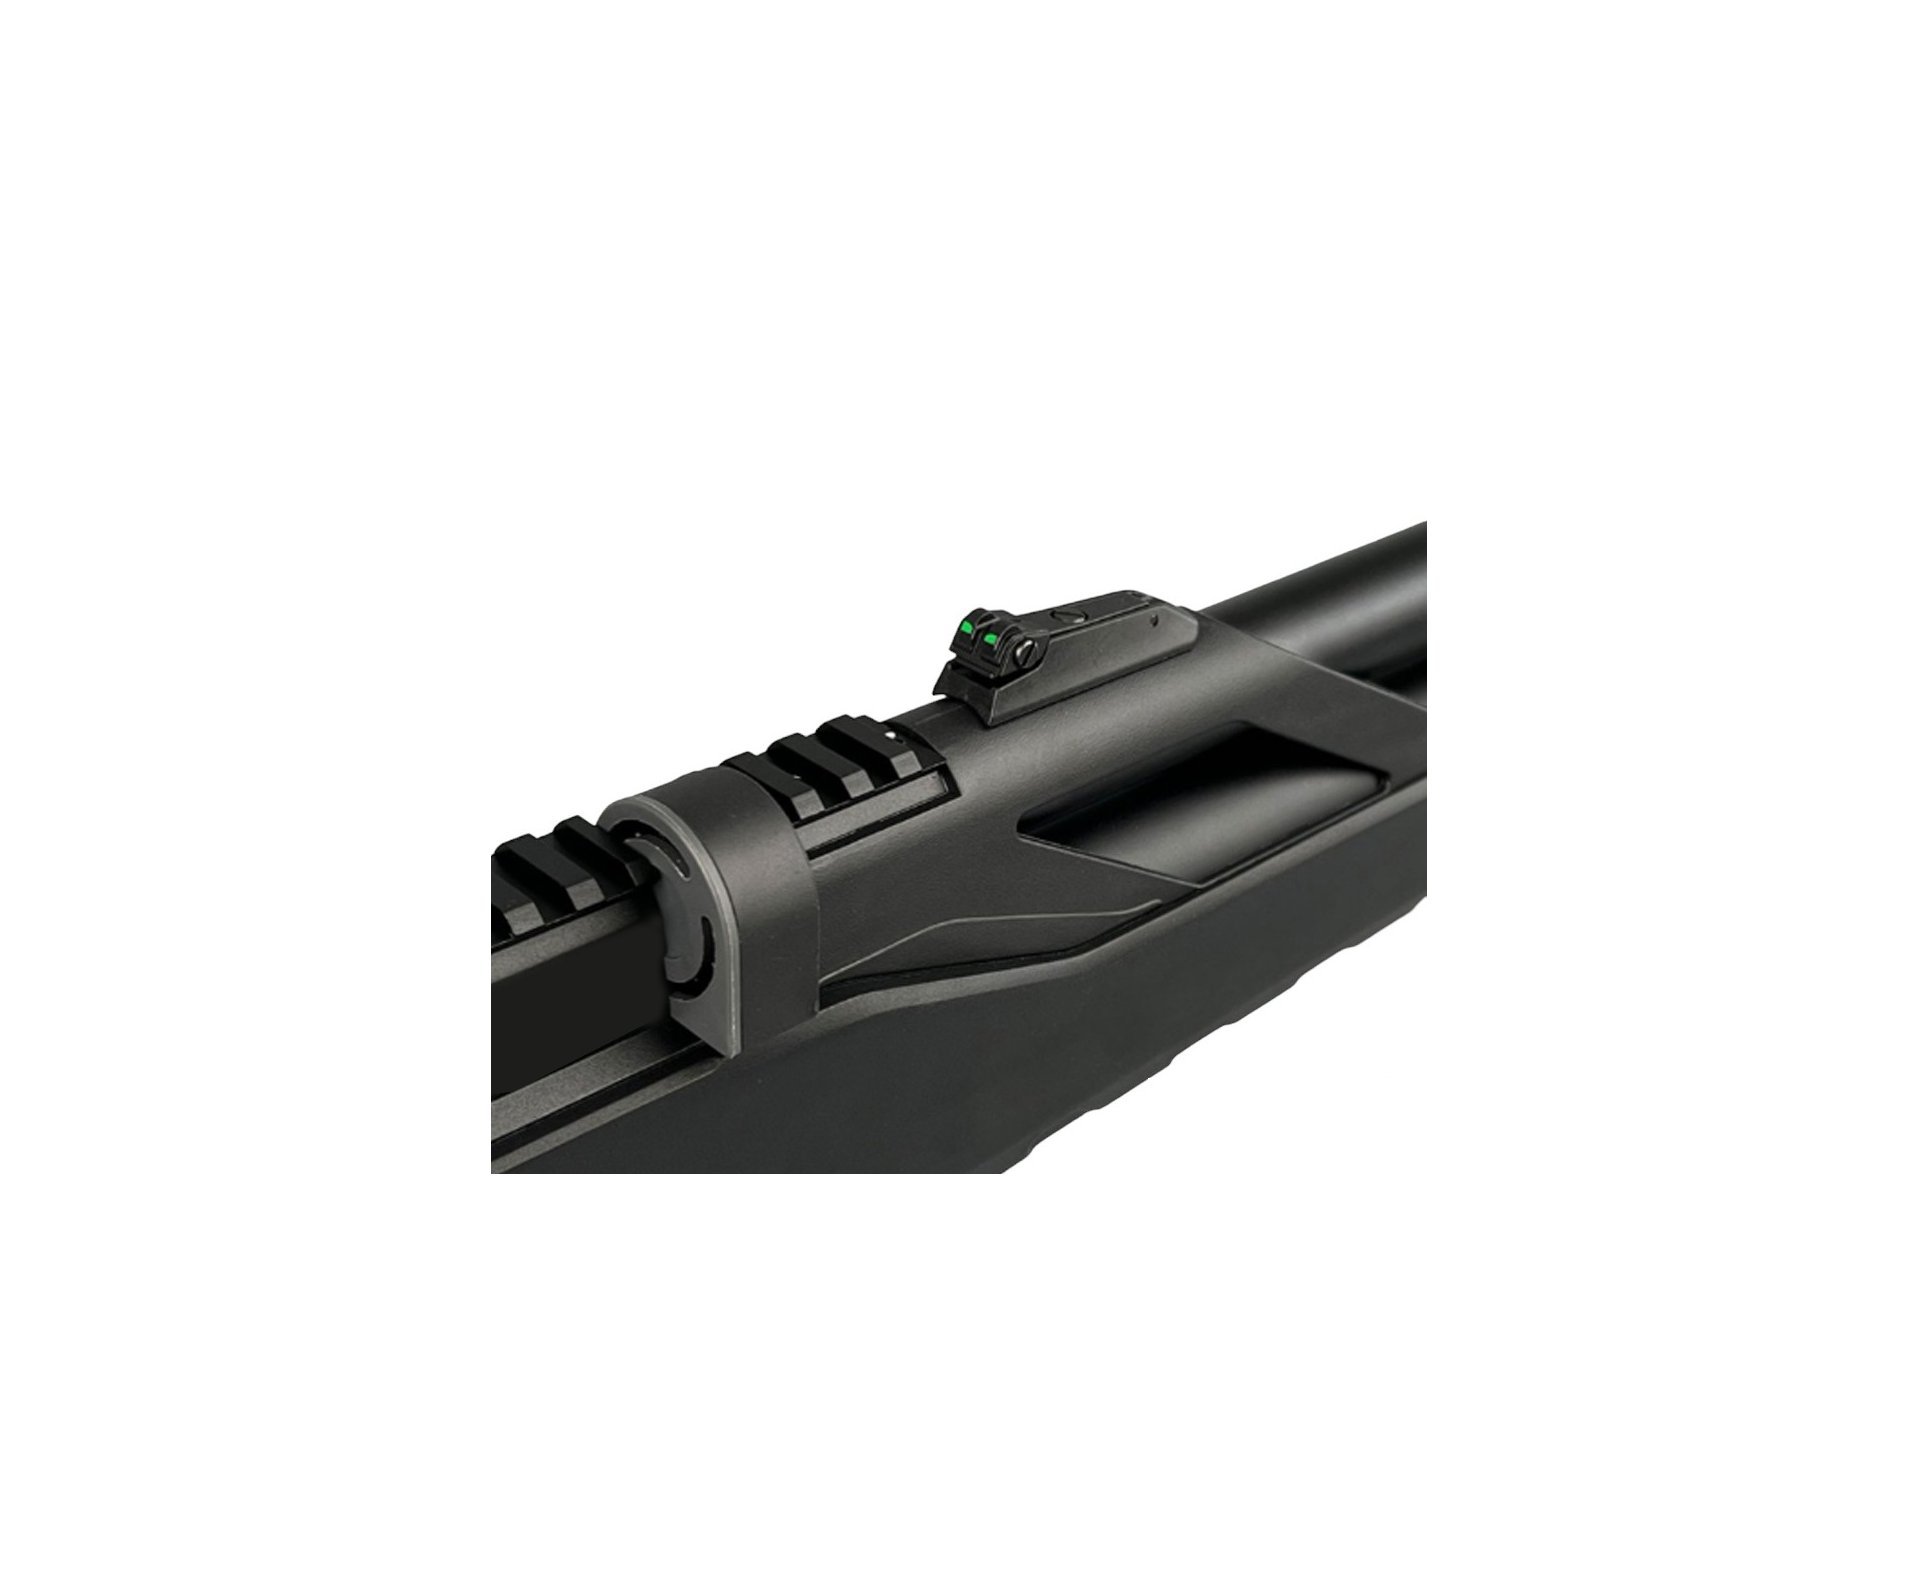 Carabina de Pressão PCP Artemis T-REX 4.5mm com Válvula Reguladora - Fixxar